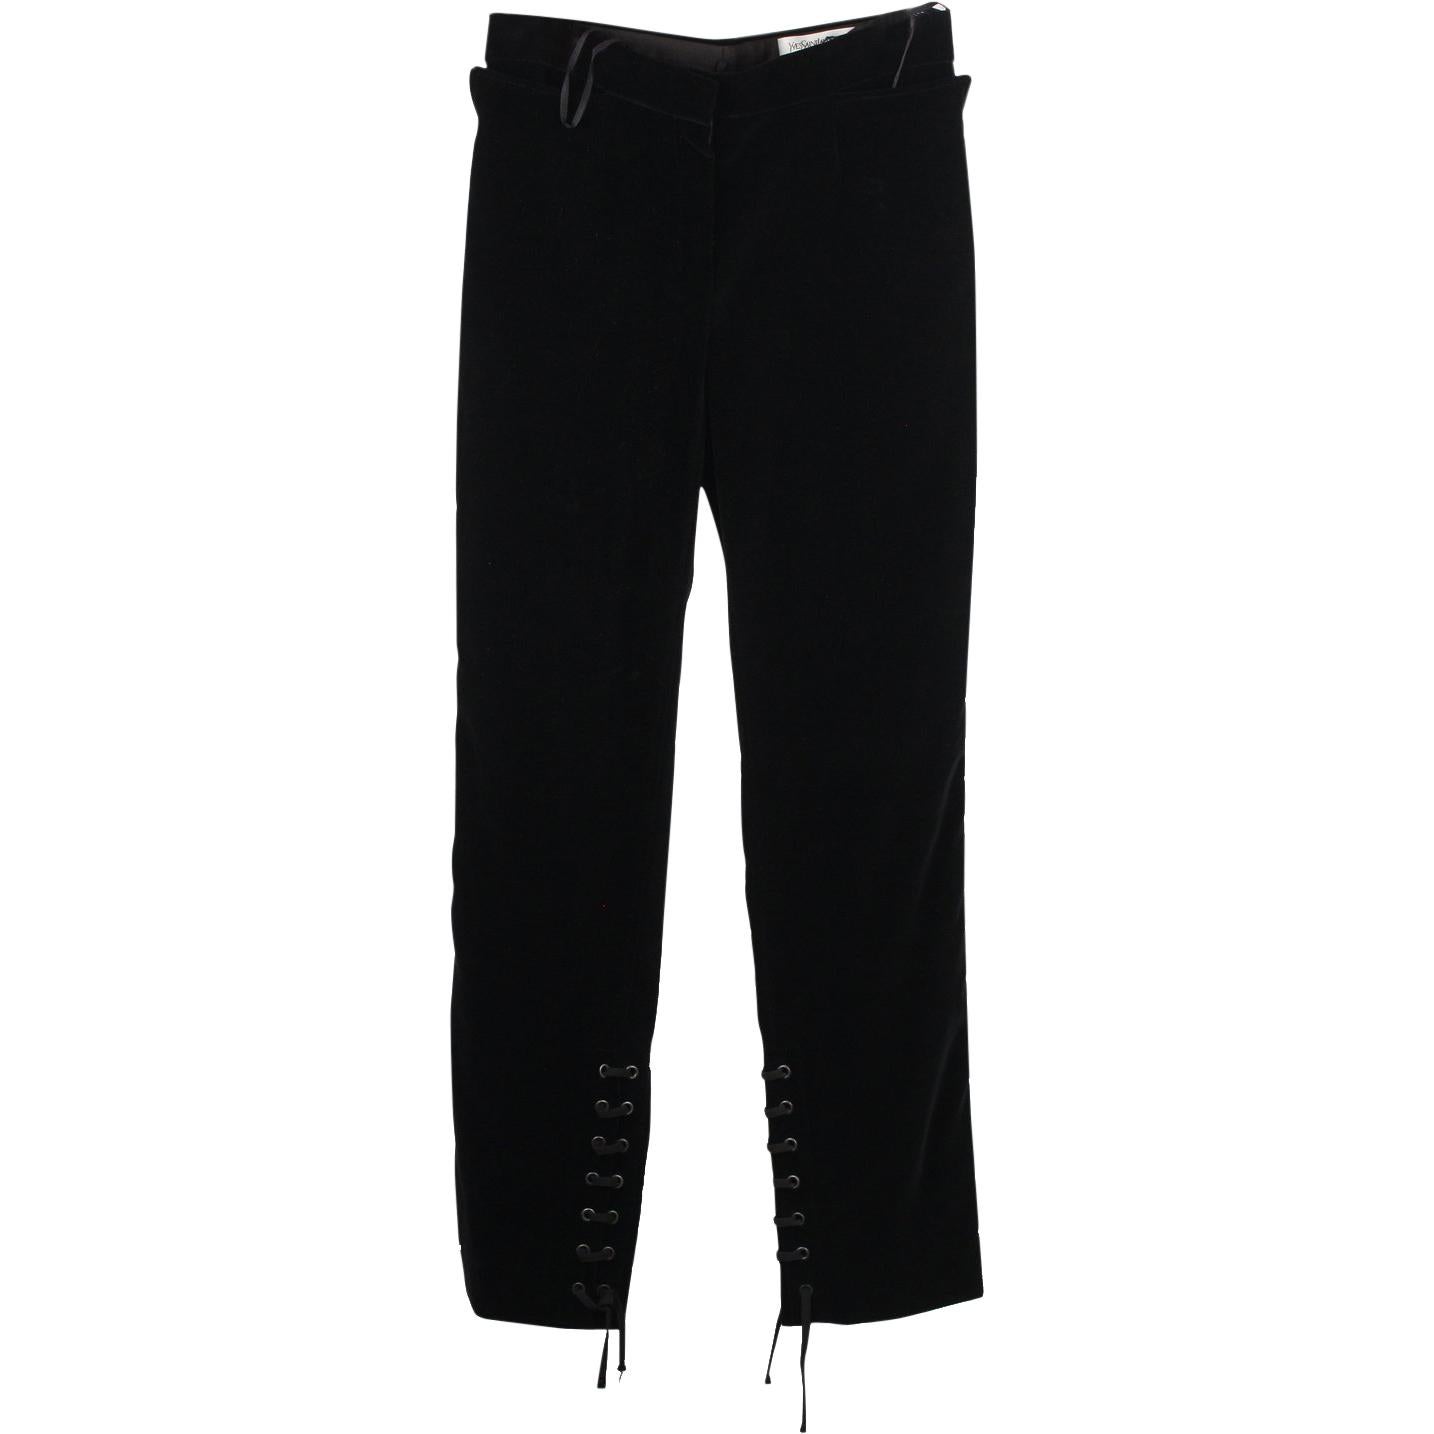 Yves Saint Laurent Velvet Pants Lace Up Detail Size 38